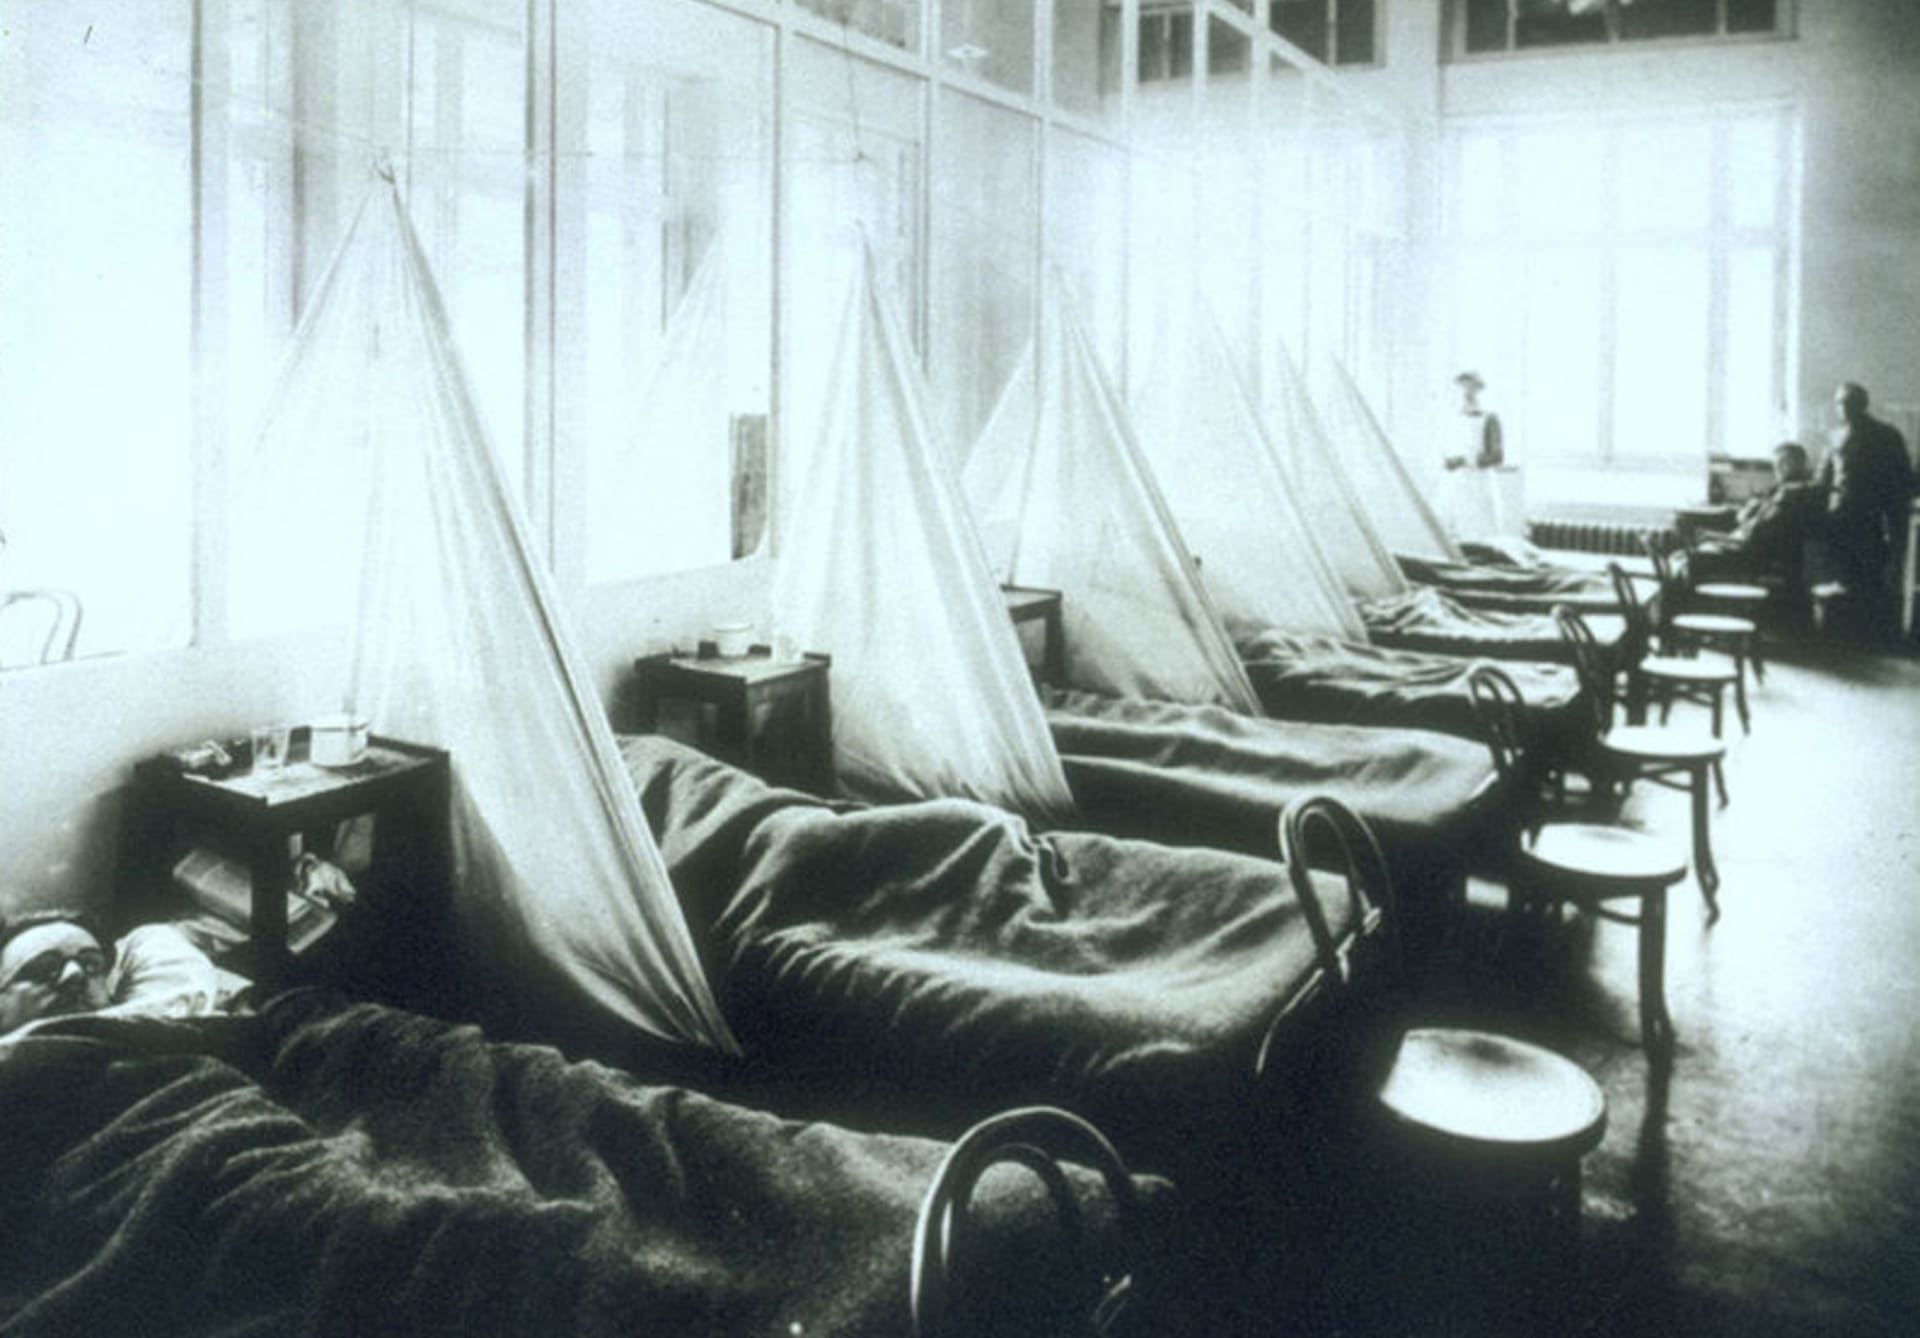 Pandemie španělské chřipky si vybrala daň v podobě mnoha desítek milionů mrtvých. Smrtnost (mezi nakaženými) se pohybovala mezi 10 a 20 procenty, úmrtnost je pak odhadována na 3-5 procent.